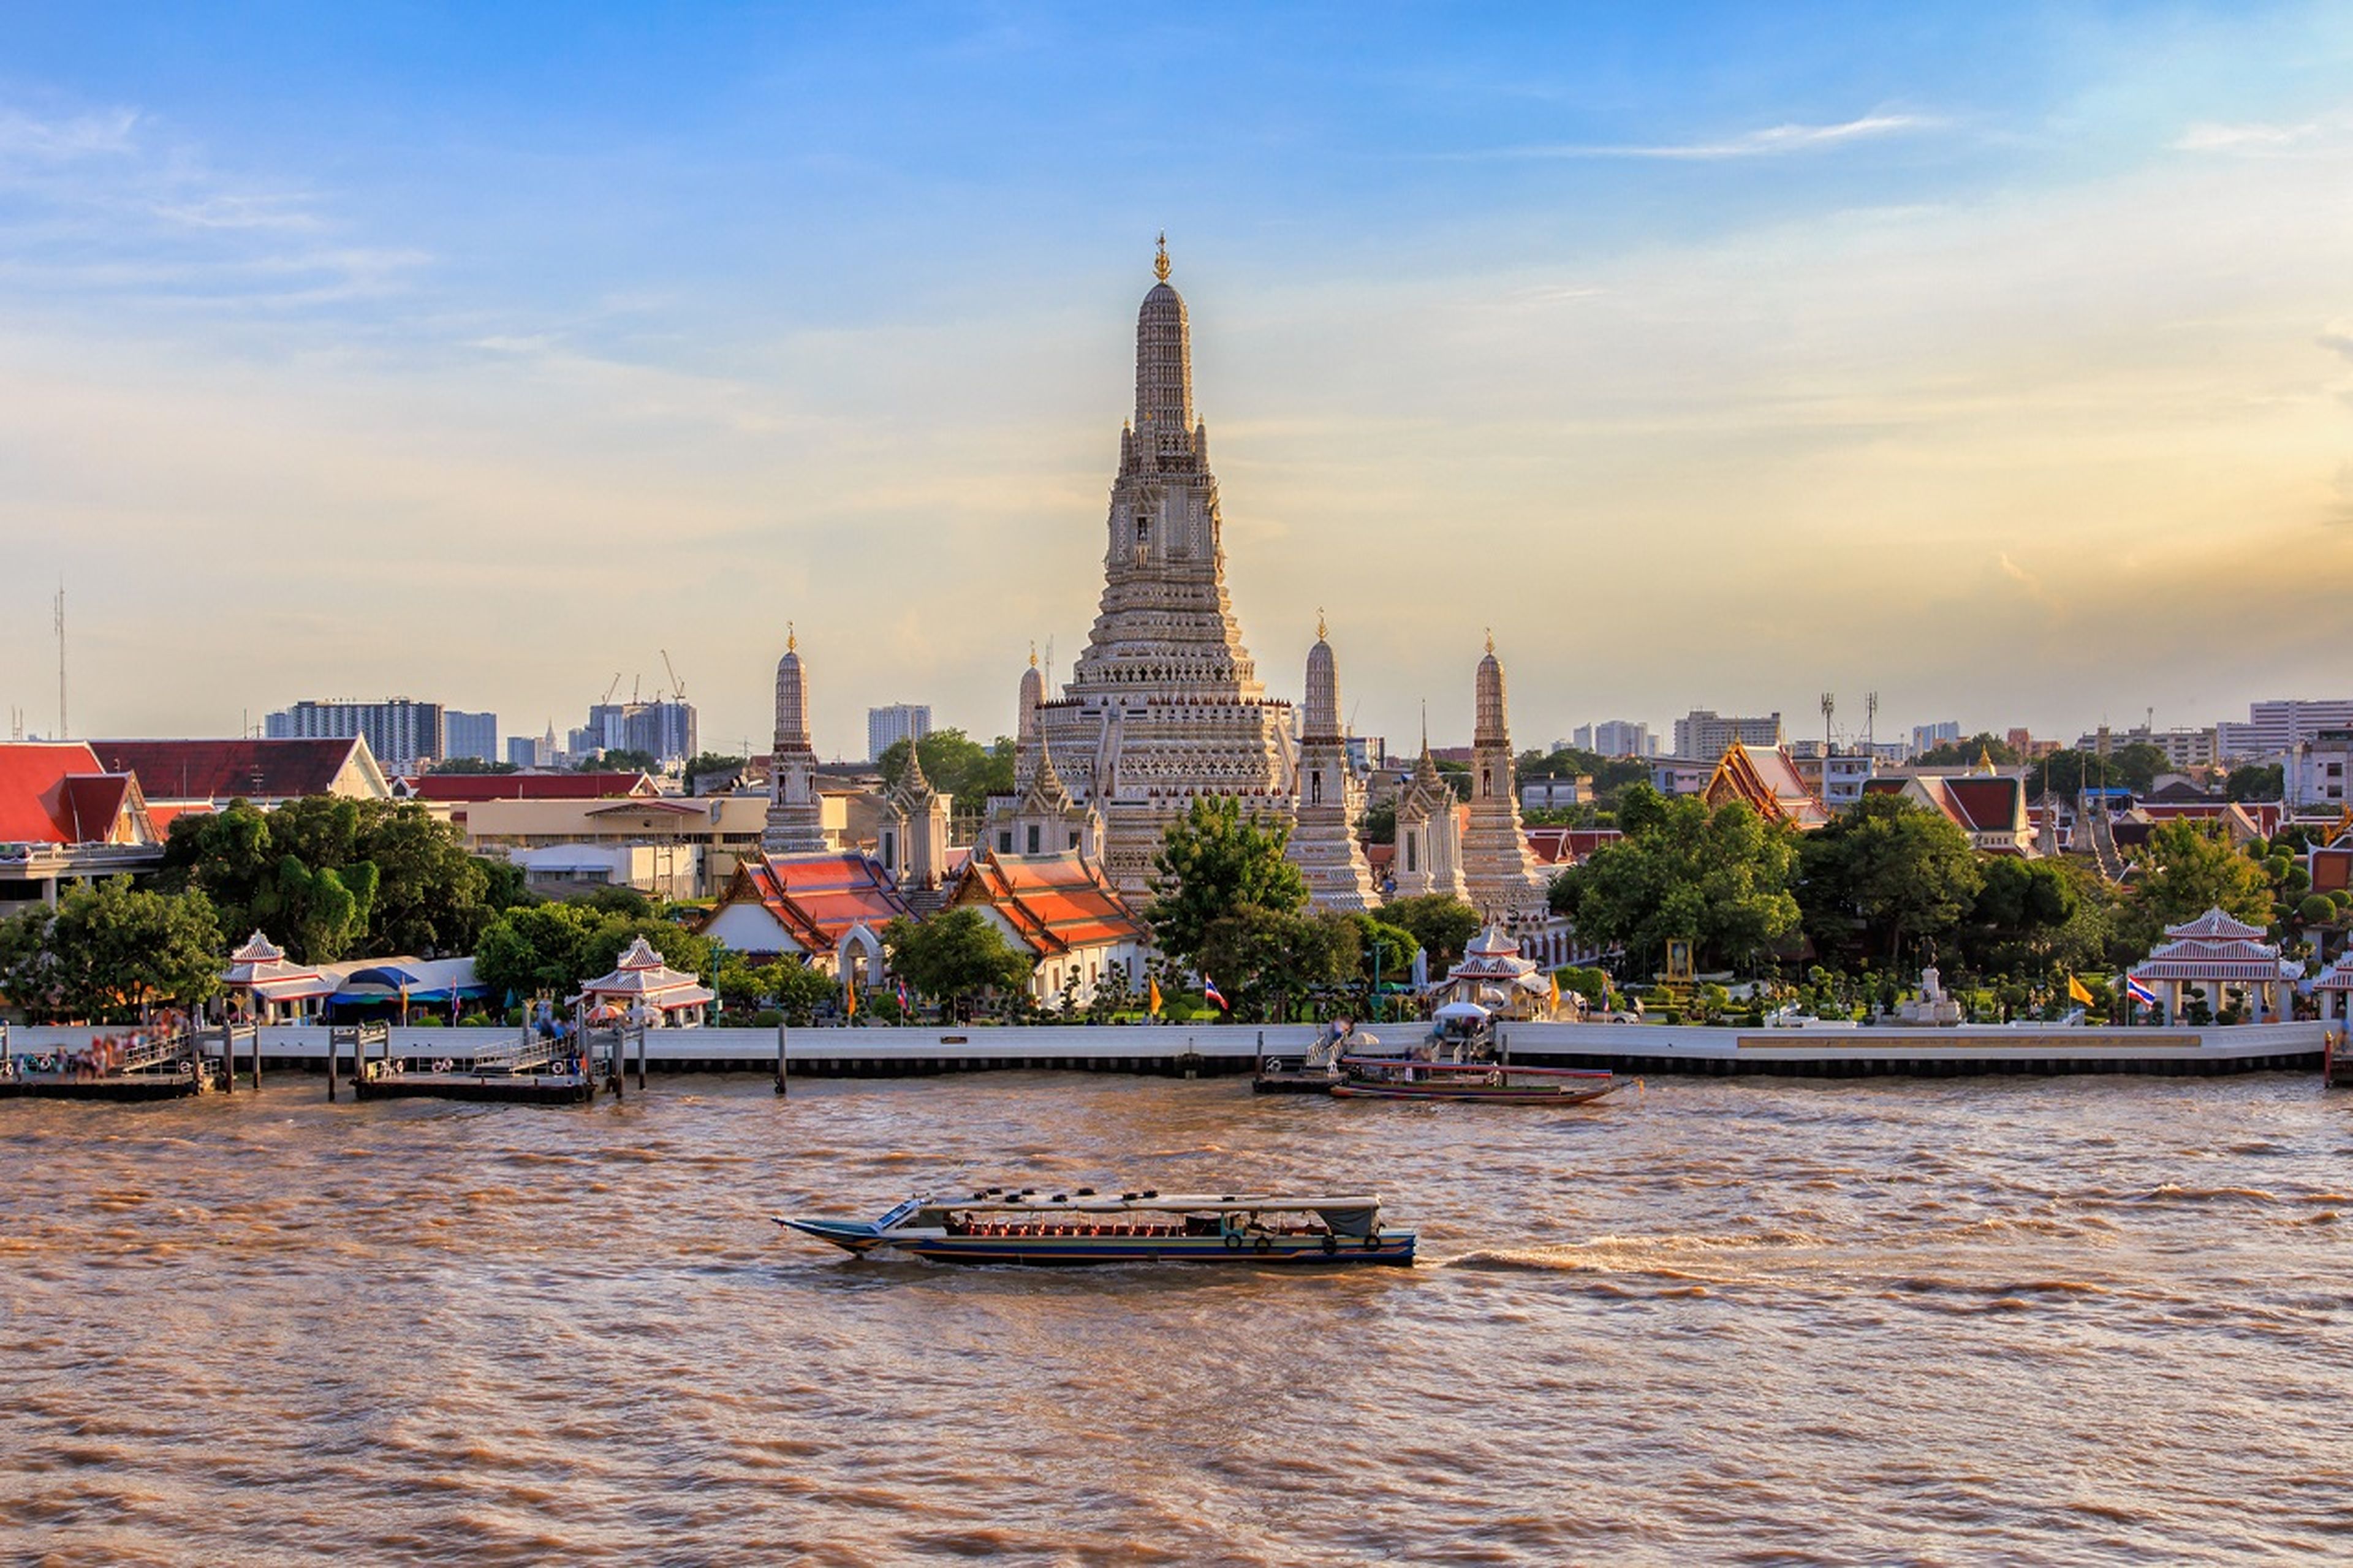 Culturas ancestrales y las más modernas ciudades caben en el sudeste asiático como Wat Arun en Bangkok, Tailandia